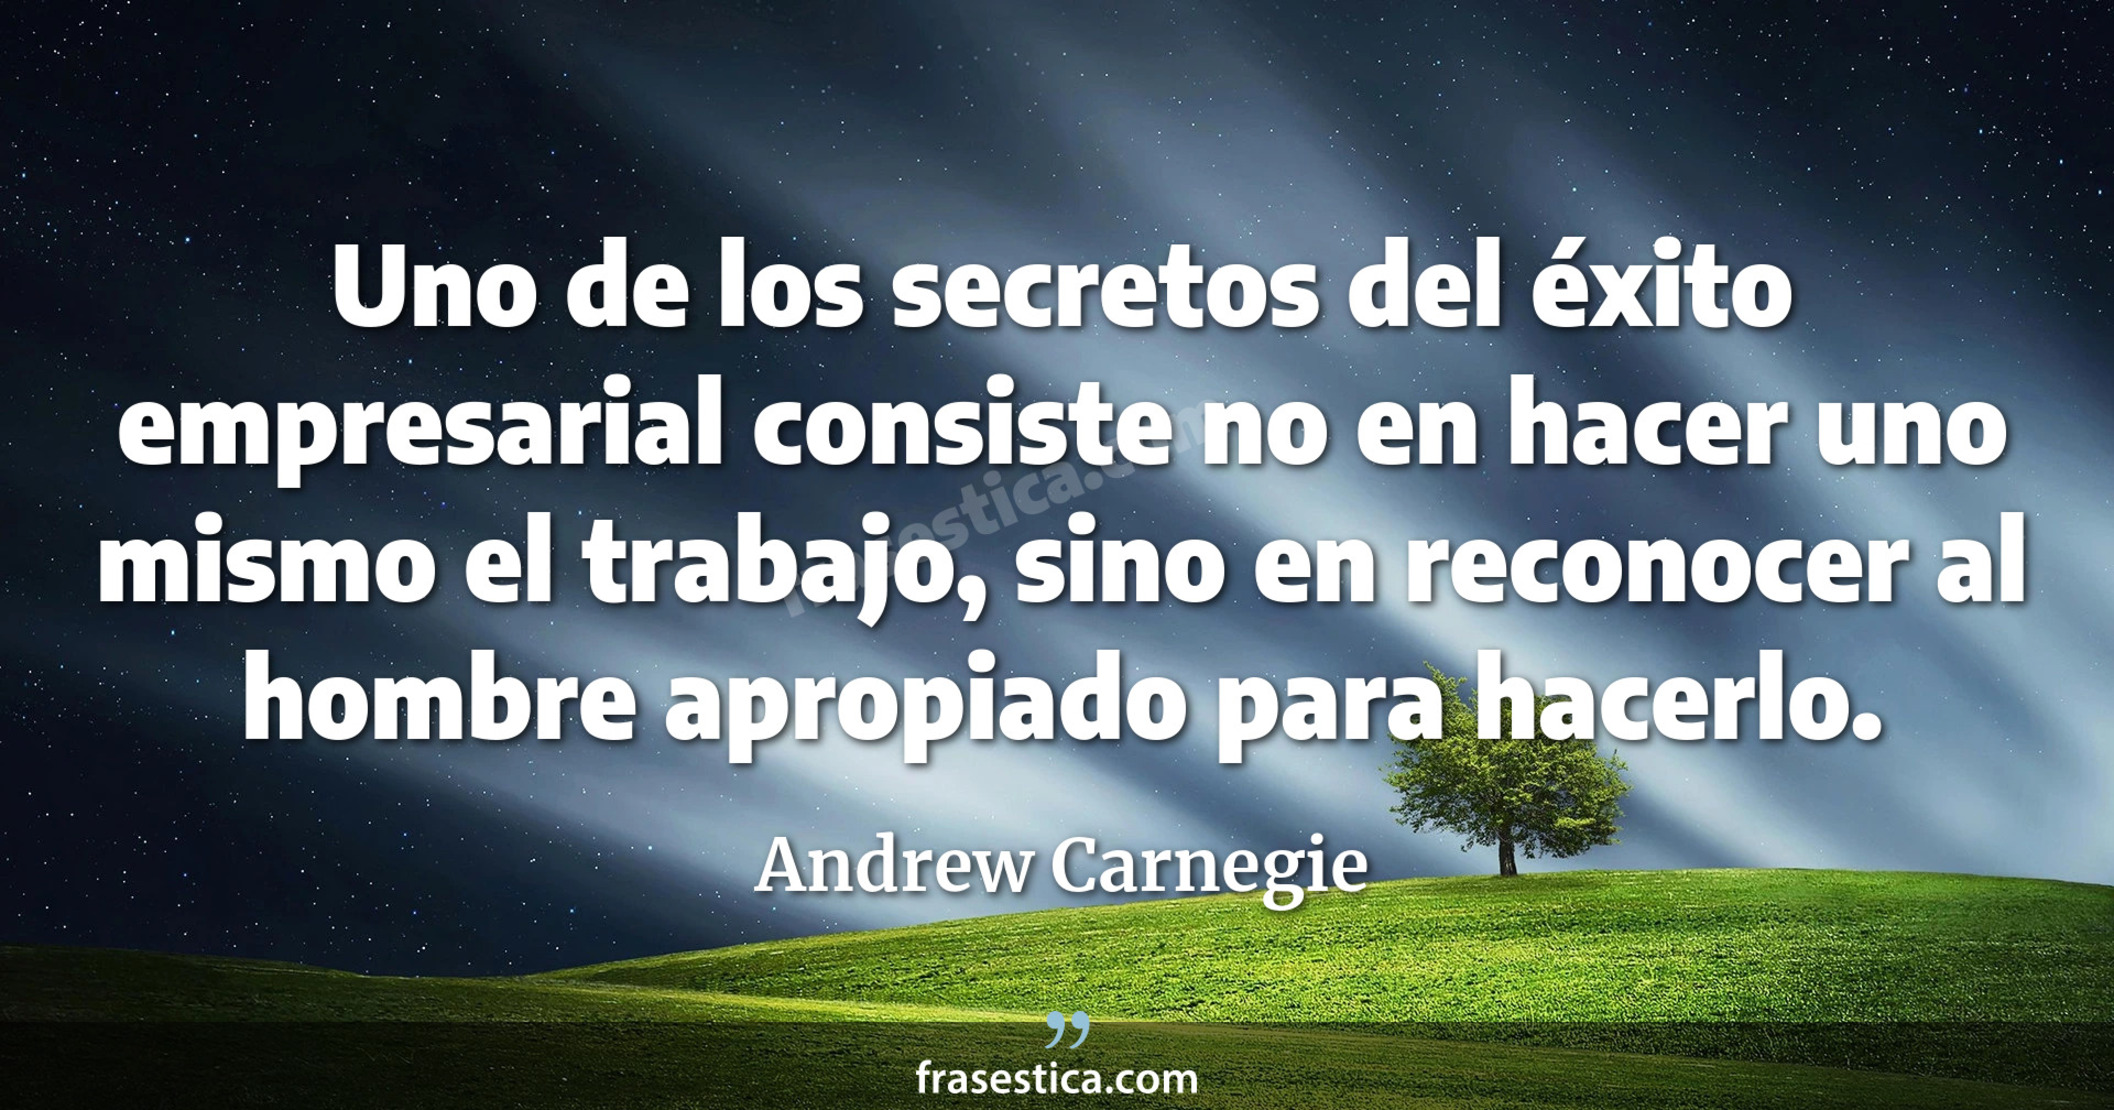 Uno de los secretos del éxito empresarial consiste no en hacer uno mismo el trabajo, sino en reconocer al hombre apropiado para hacerlo. - Andrew Carnegie